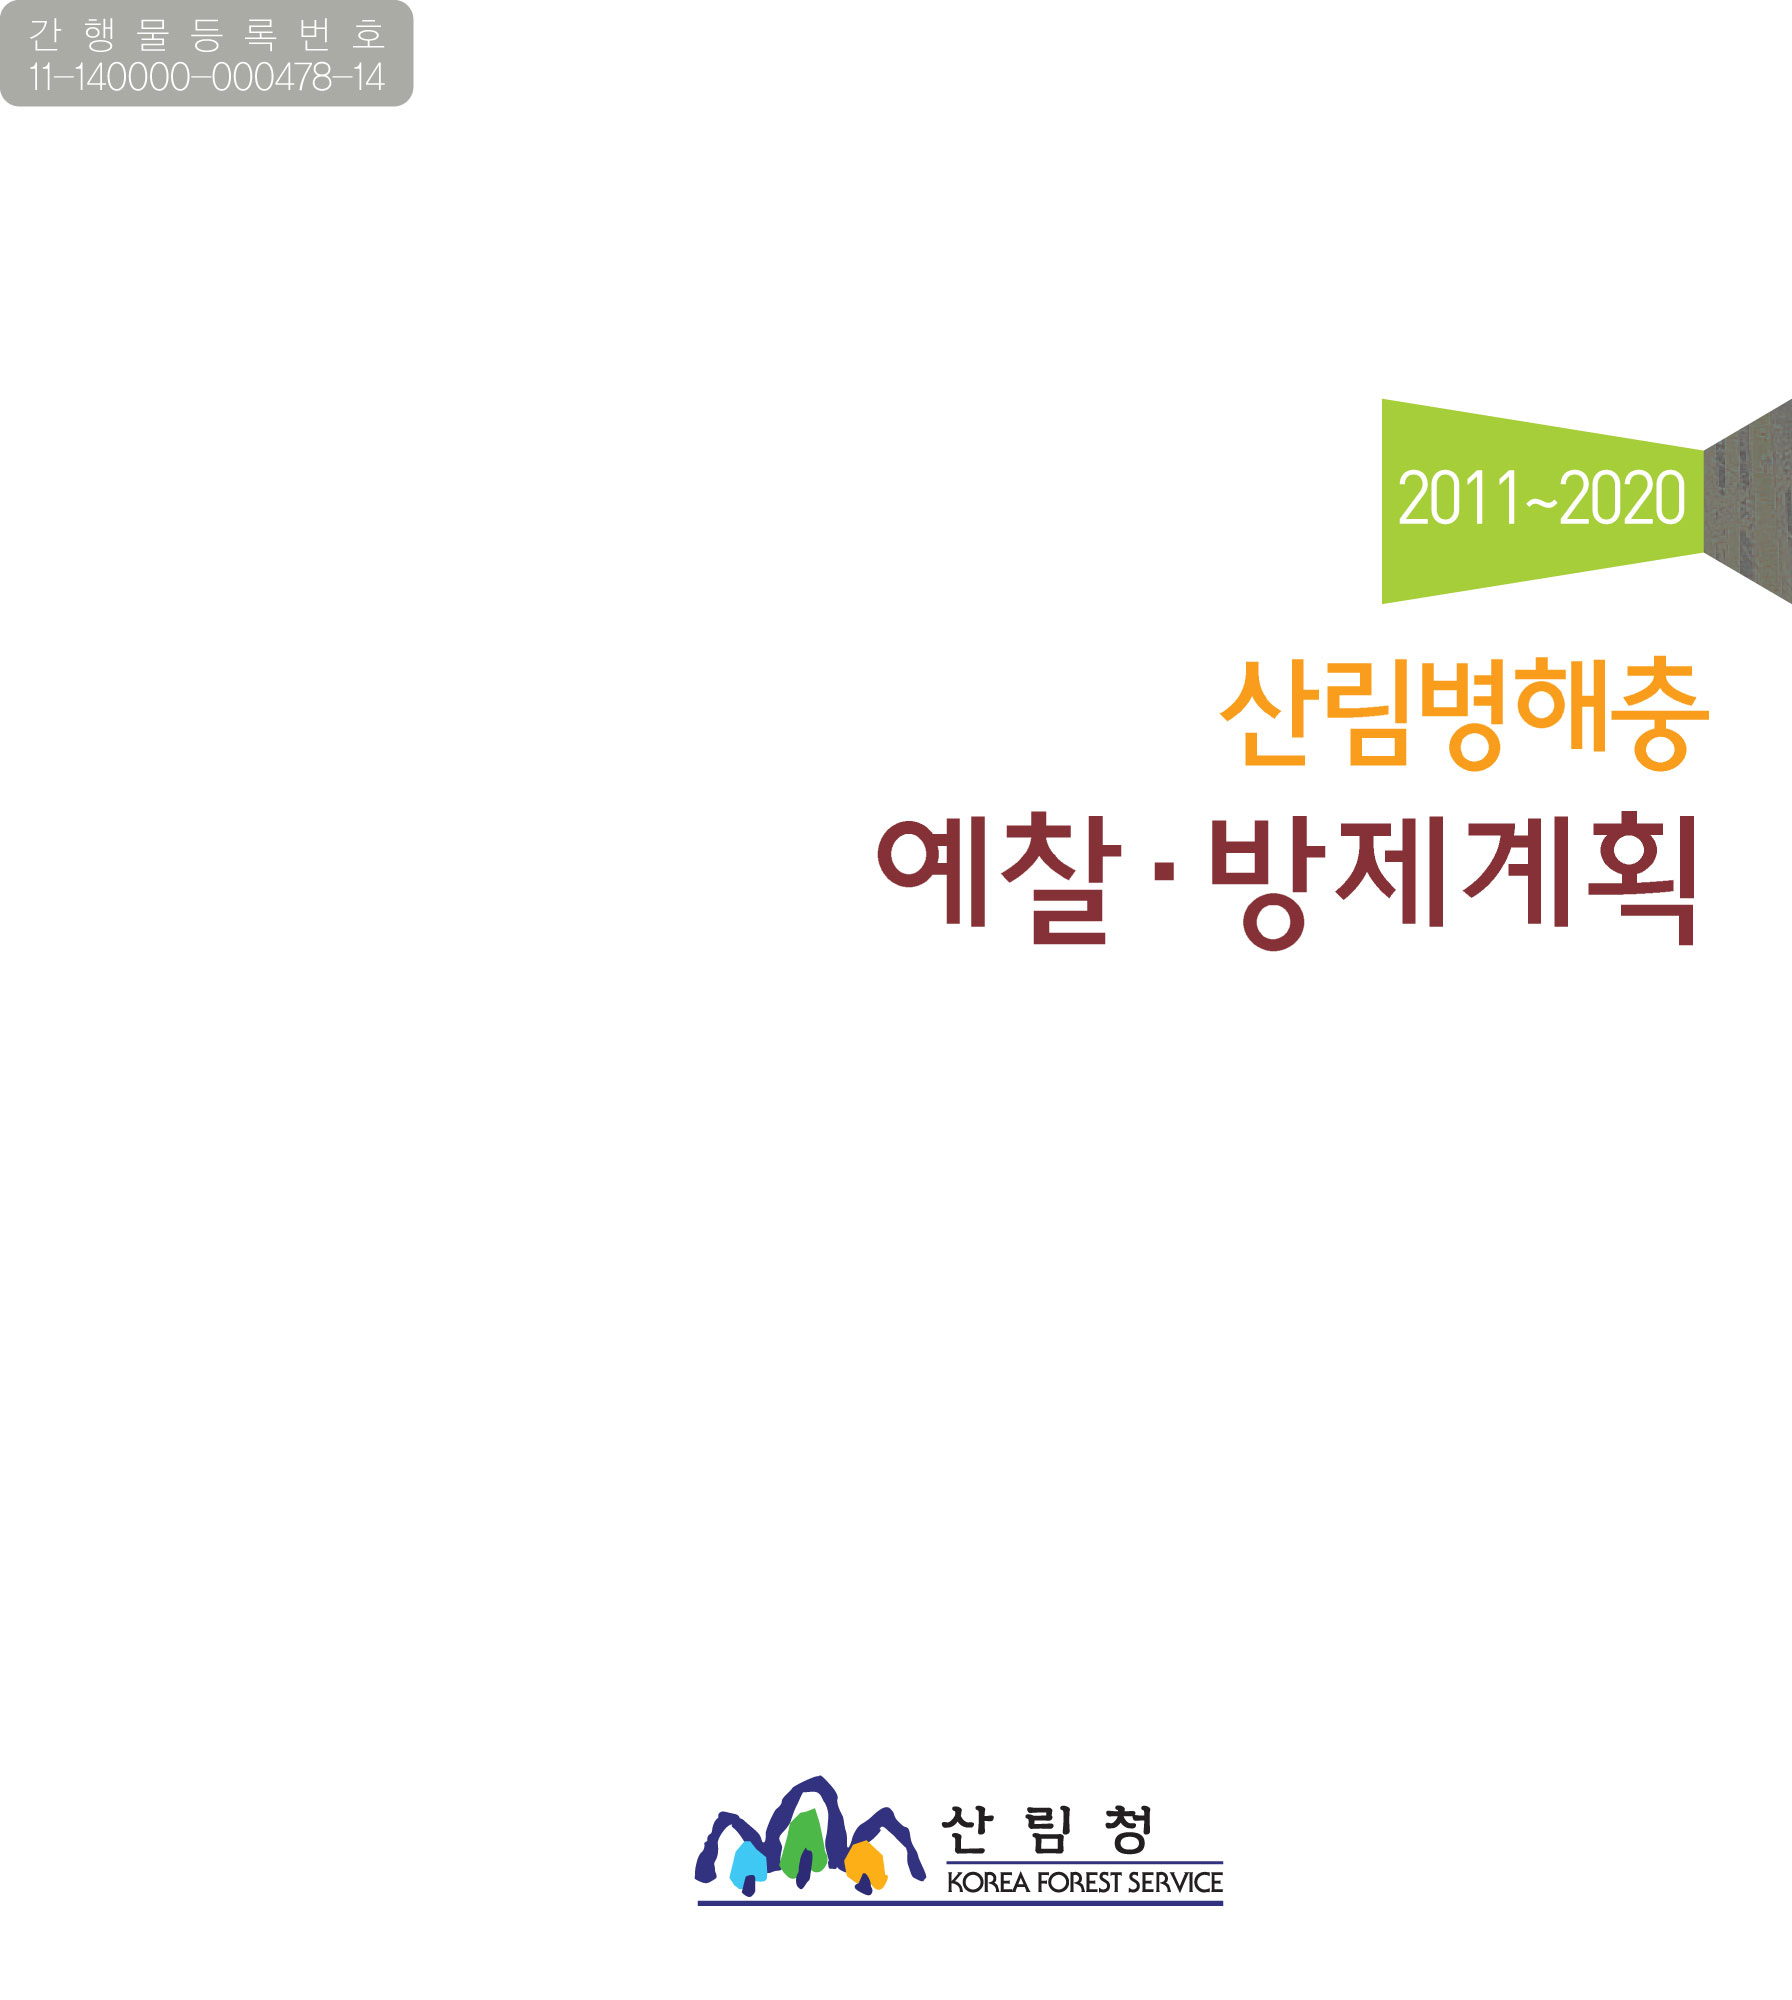 2011-2020예찰 및 방제계획 표지